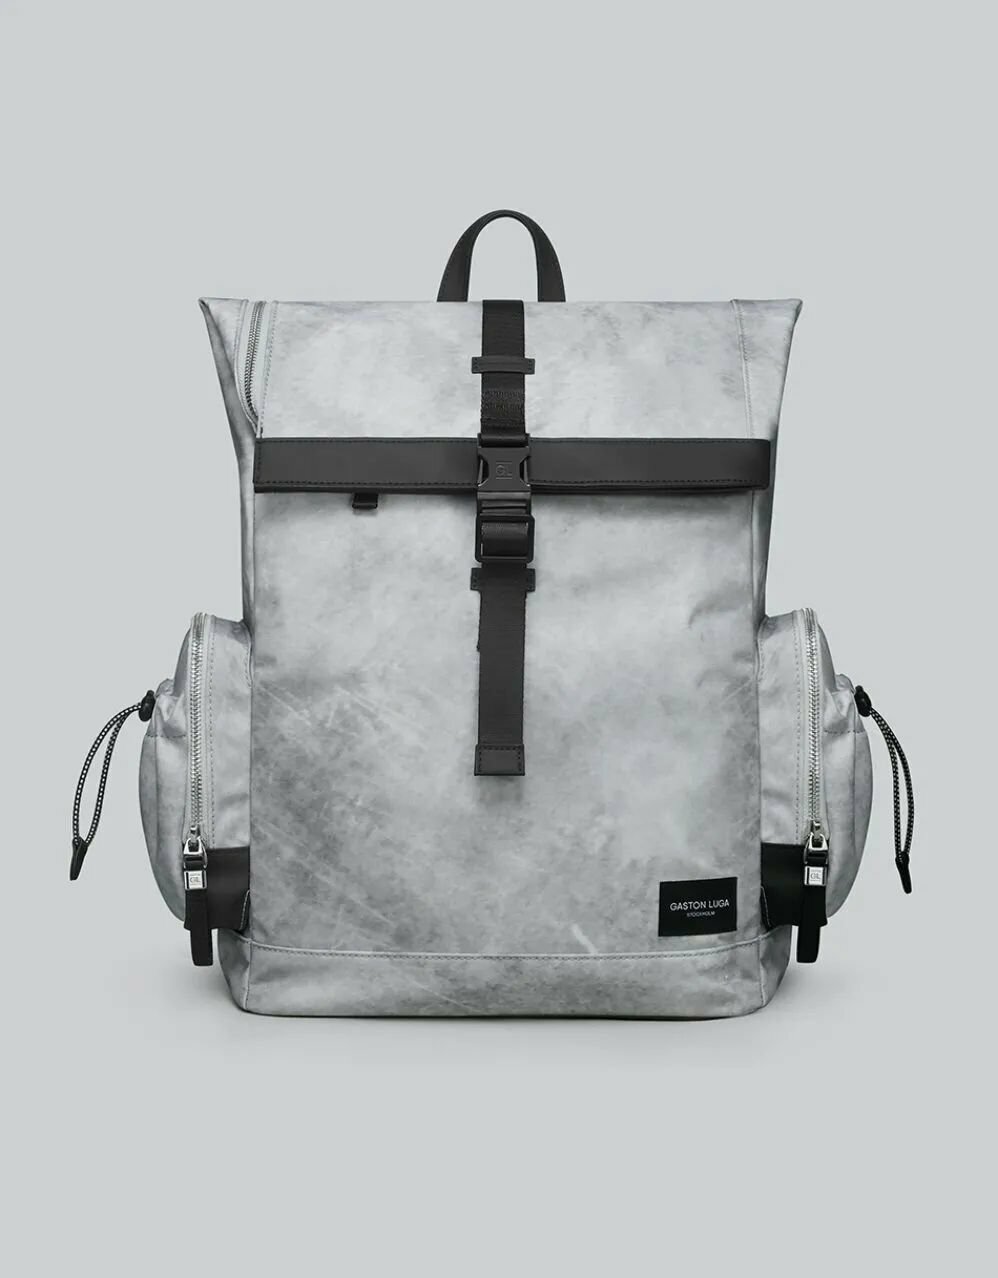 Рюкзак Универсальный 16" Gaston Luga CC104 Backpack Resenar 11' - 16'. Цвет: бетонный узор цвет: серый